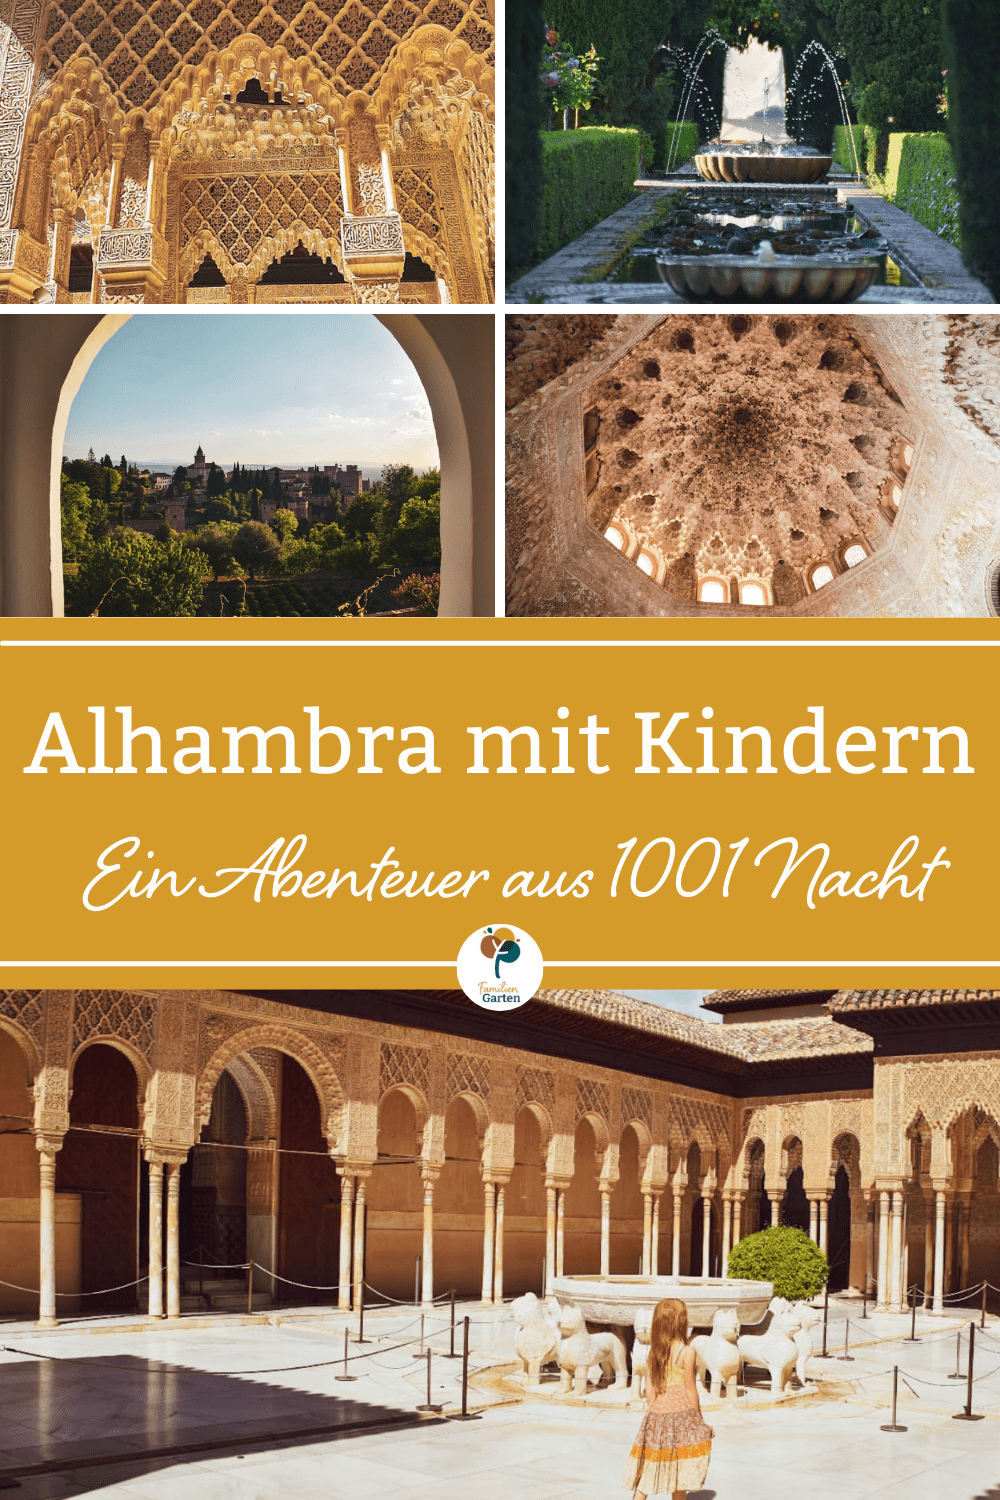 Alhambra mit Kindern erleben - Eintauchen in 1001 Nacht - Familiengarten